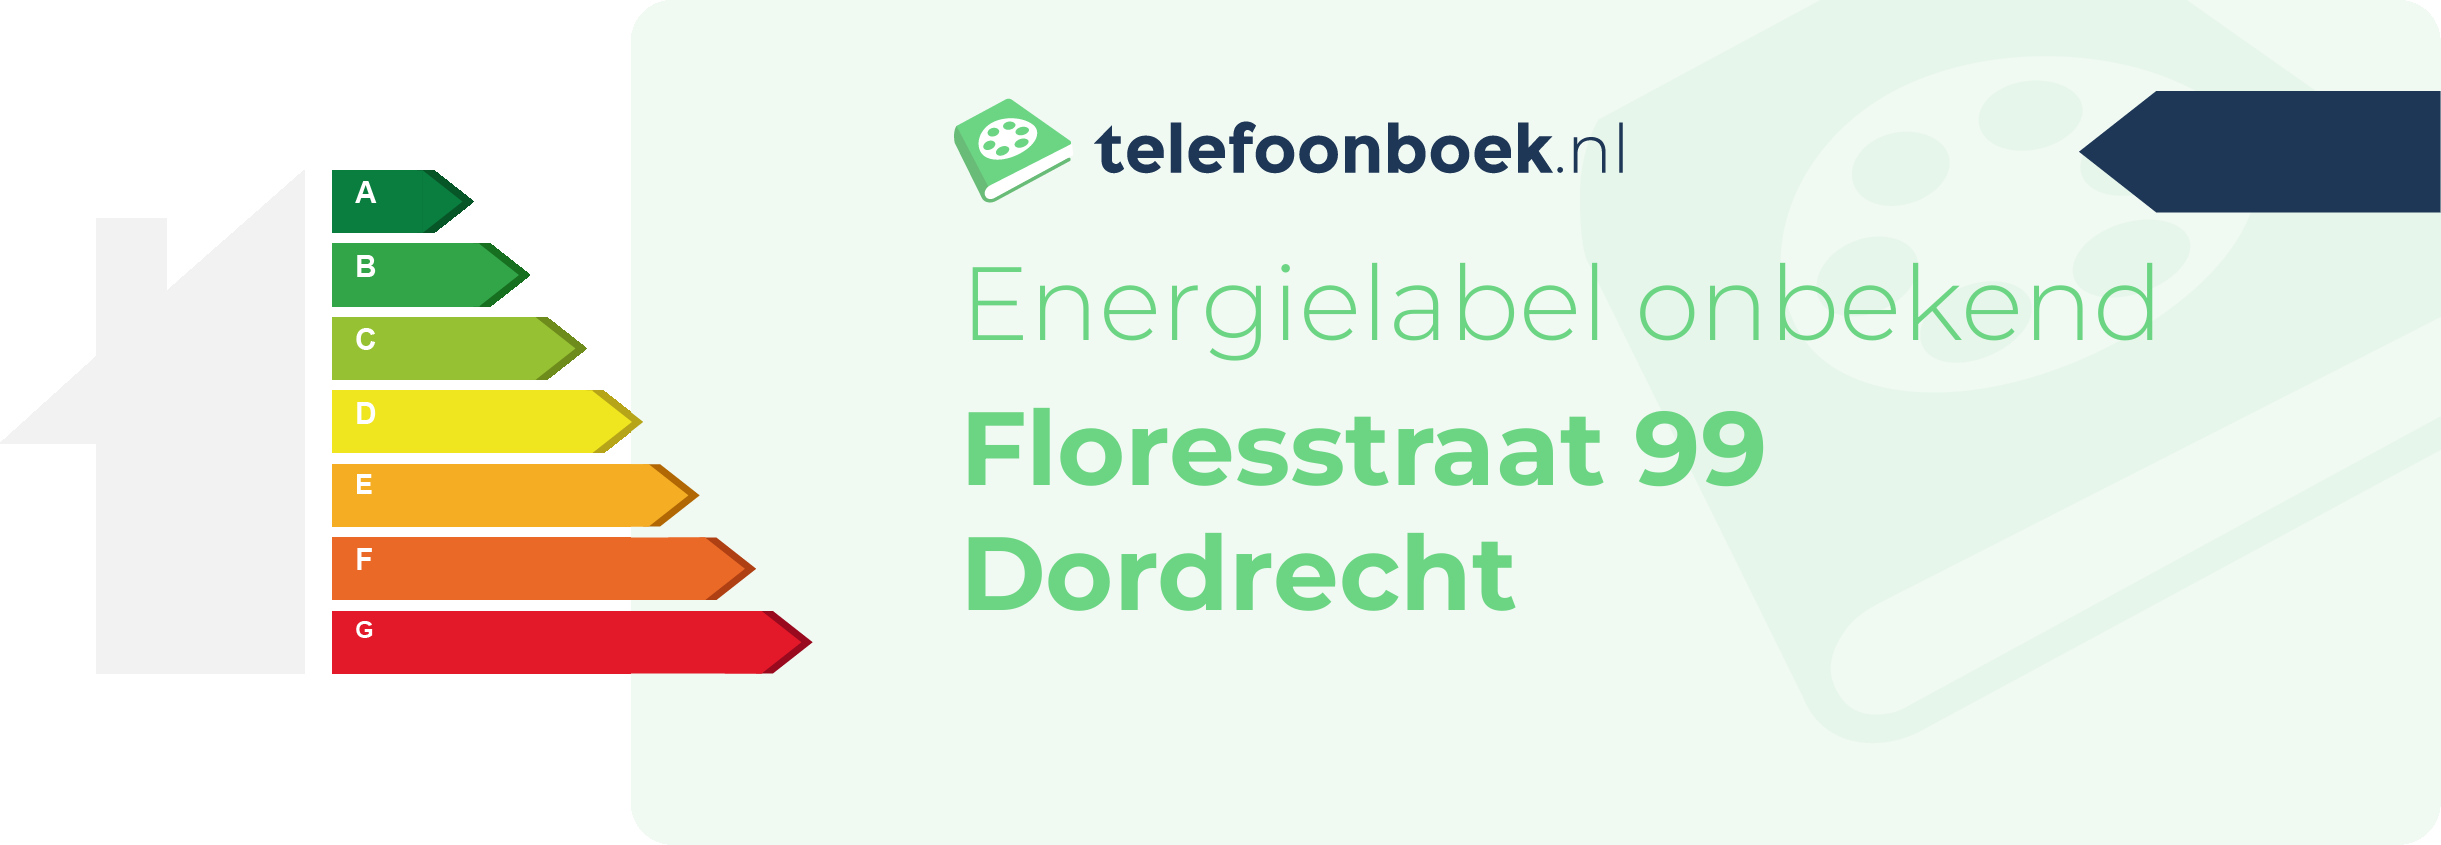 Energielabel Floresstraat 99 Dordrecht